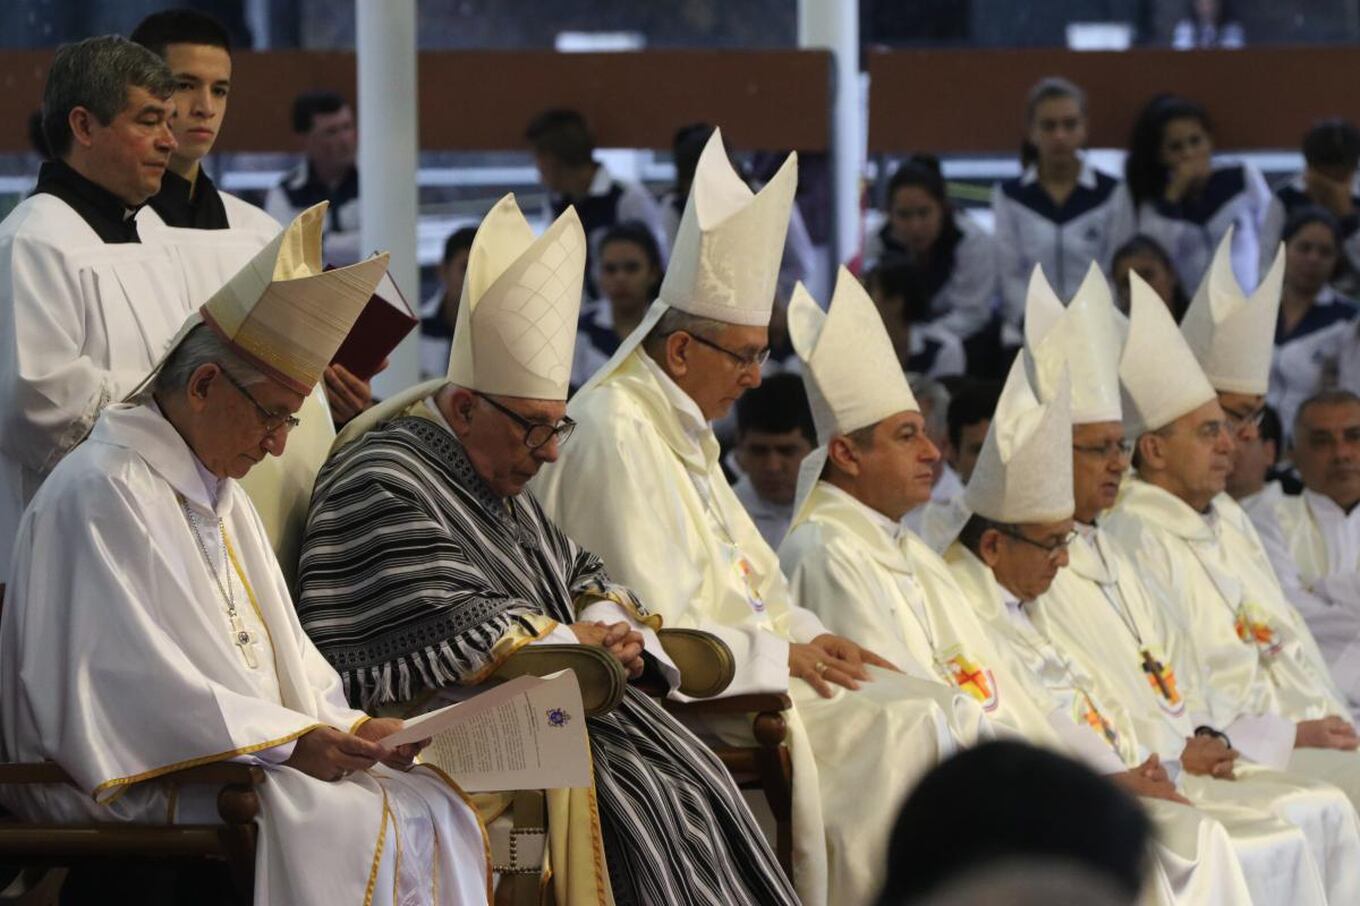 La presencia del cardenal Luis Héctor Villalba, enviado del papa Francisco, indudablemente fue uno de los principales hechos este año.